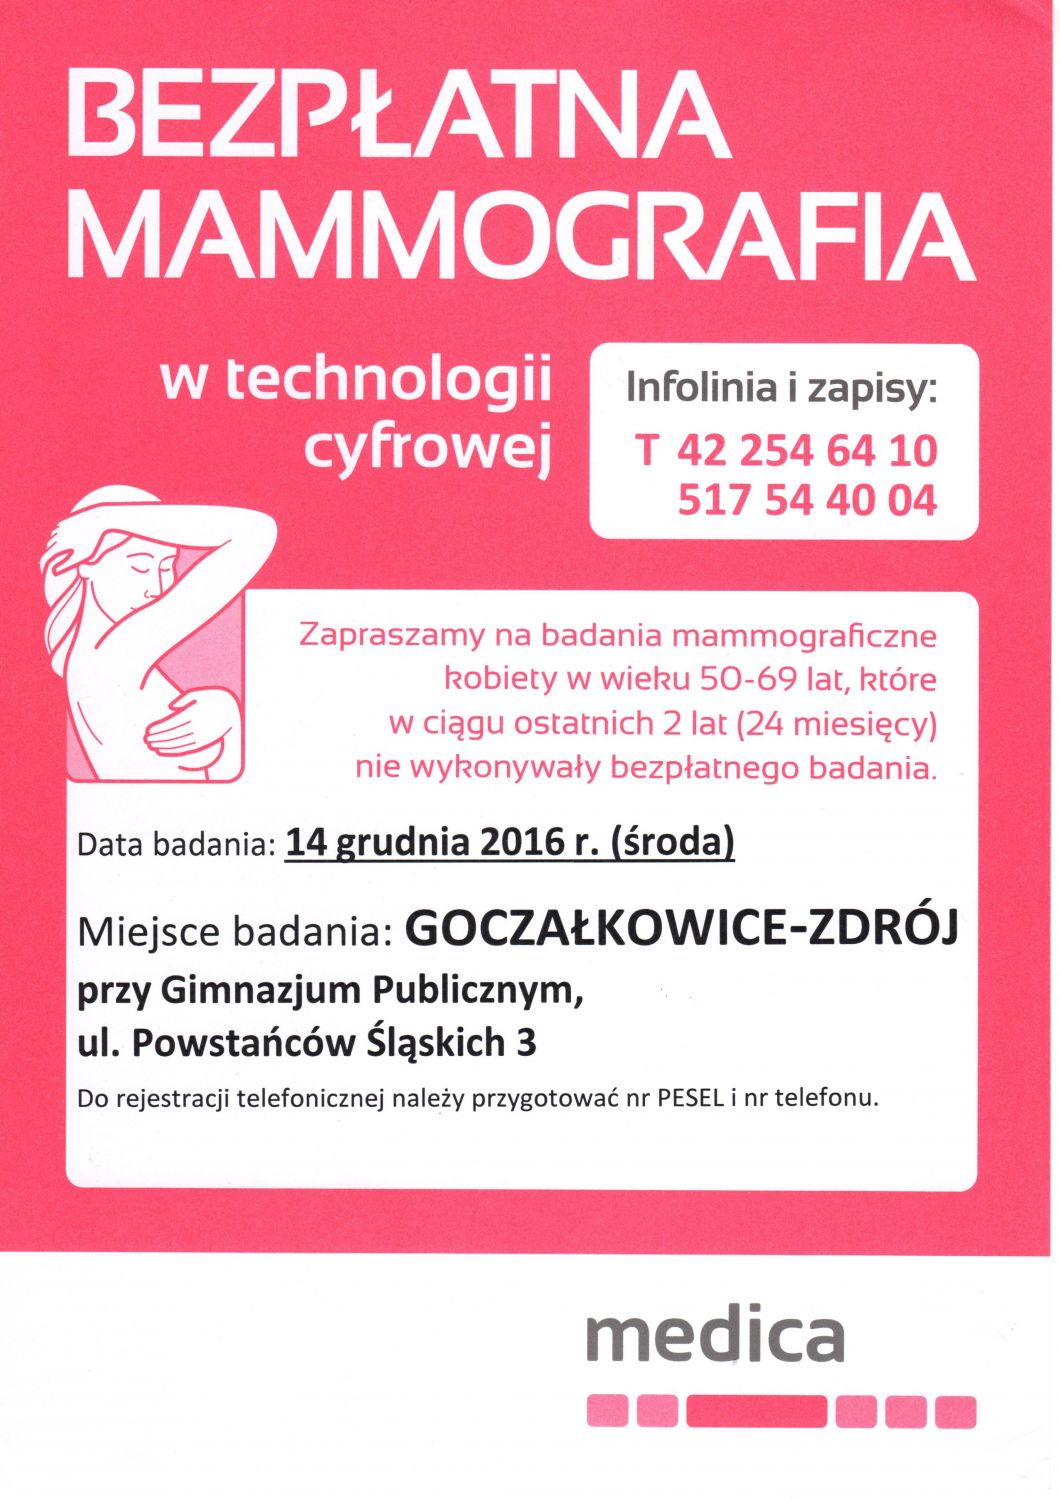 Bezpłatna mammografia w Goczałkowicach-Zdroju